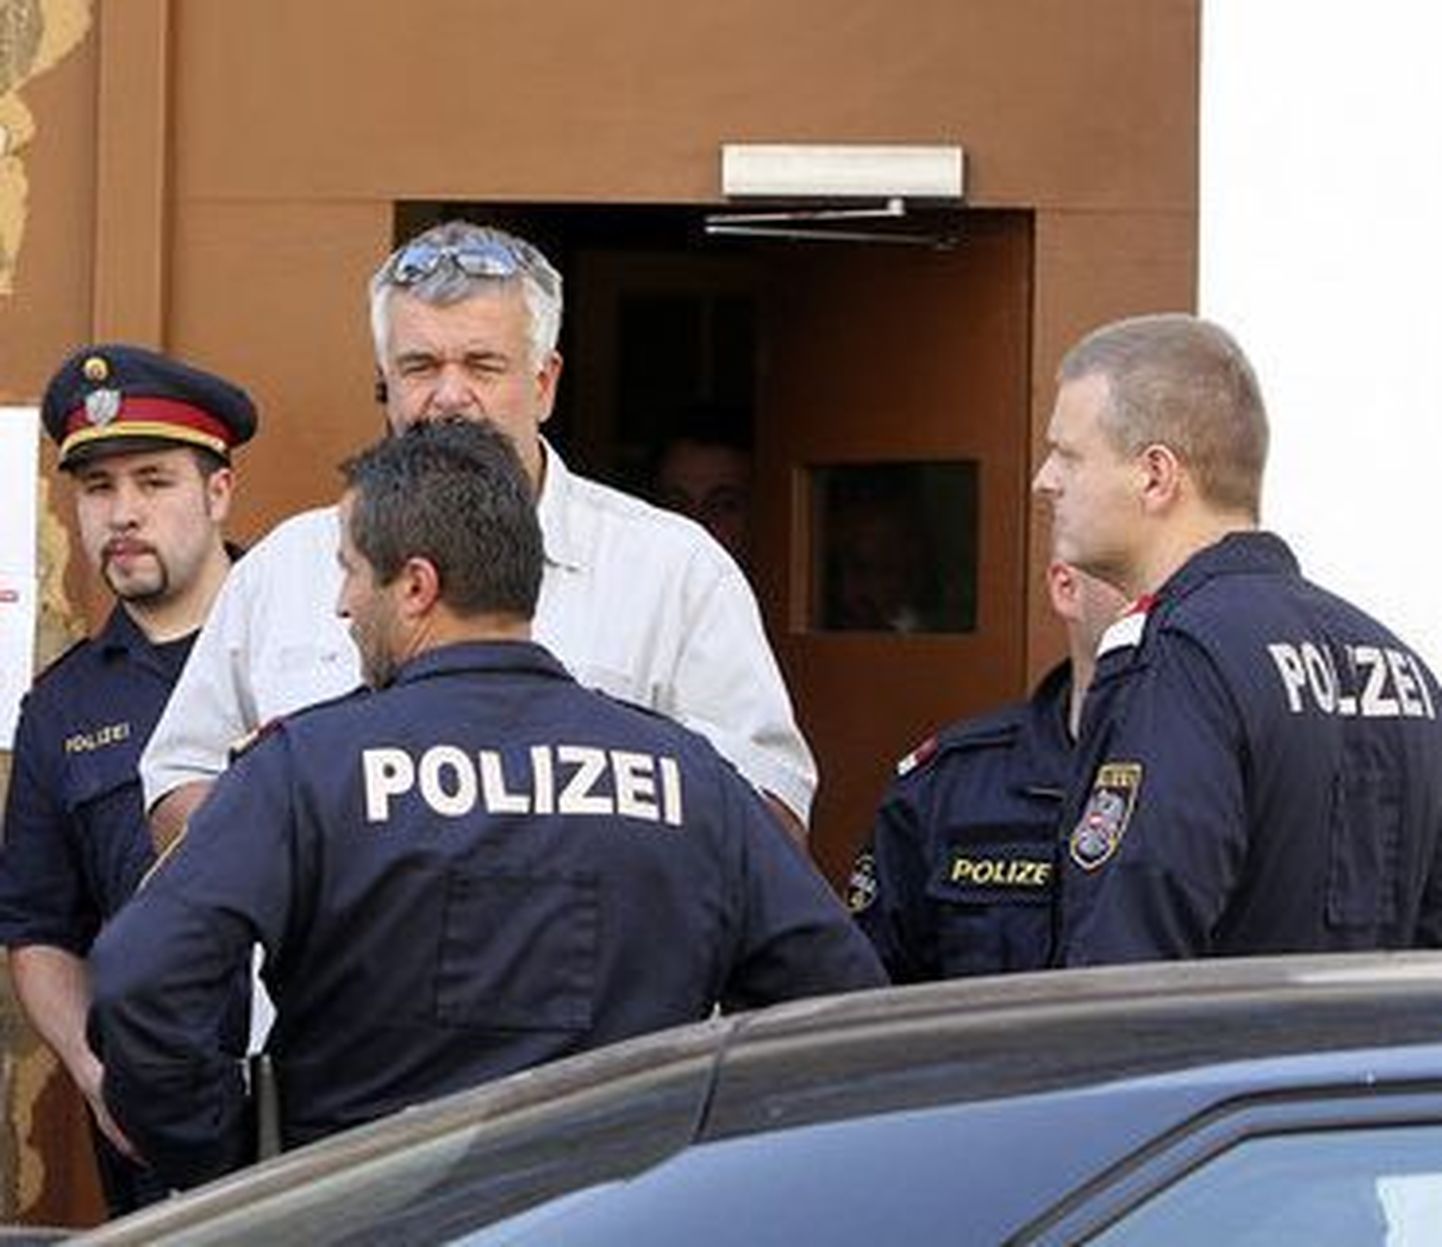 Europol arreteeris üle 100 pedofiiliakahtlusega isiku